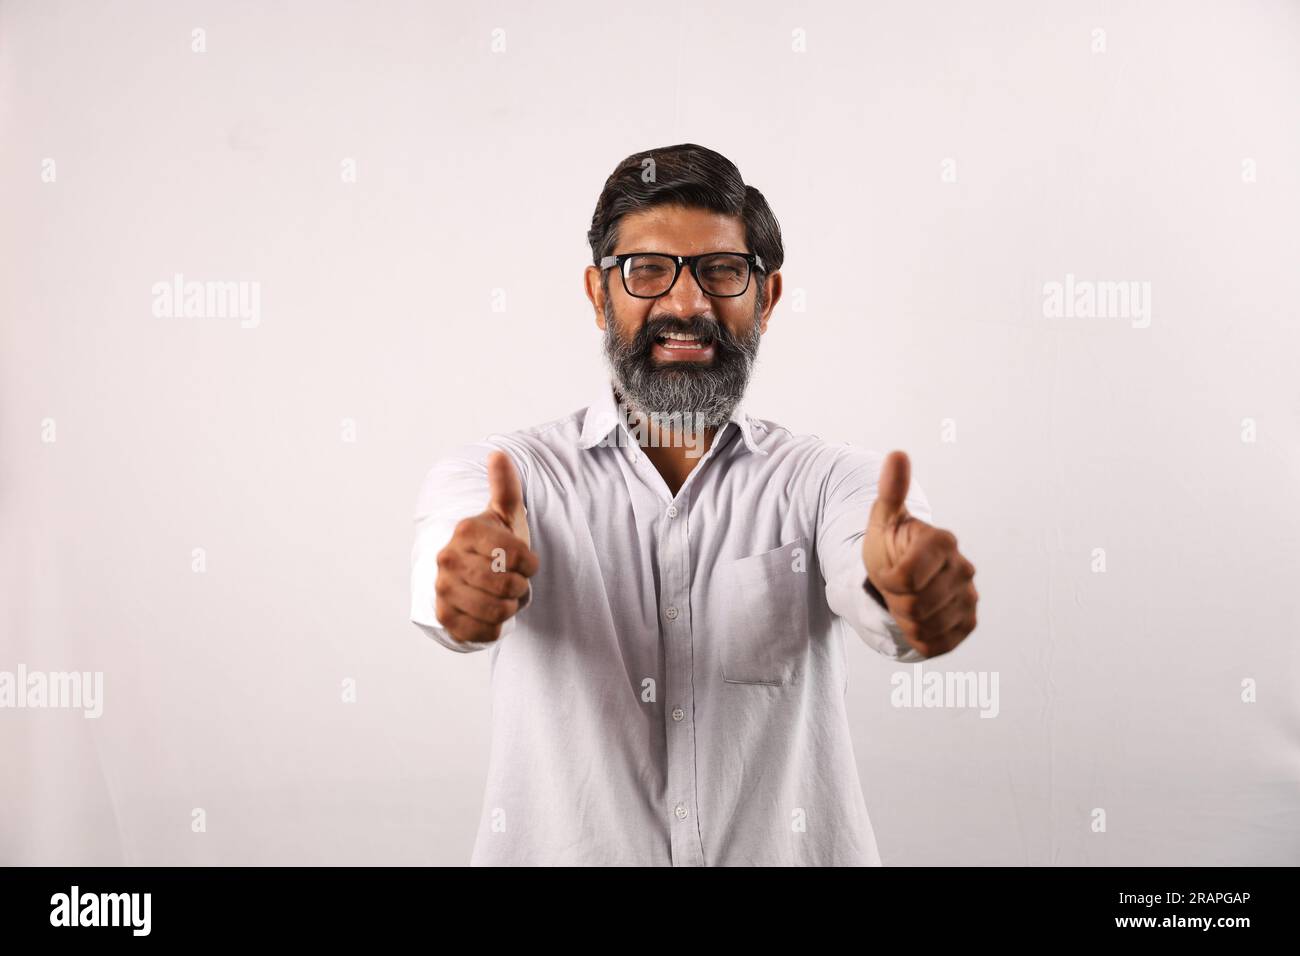 Ritratto di un uomo barbuto indiano che indossa una camicia. Espressioni funky senso di realizzazione e realizzazione. Pollice in alto. Strategia vincente. Foto Stock